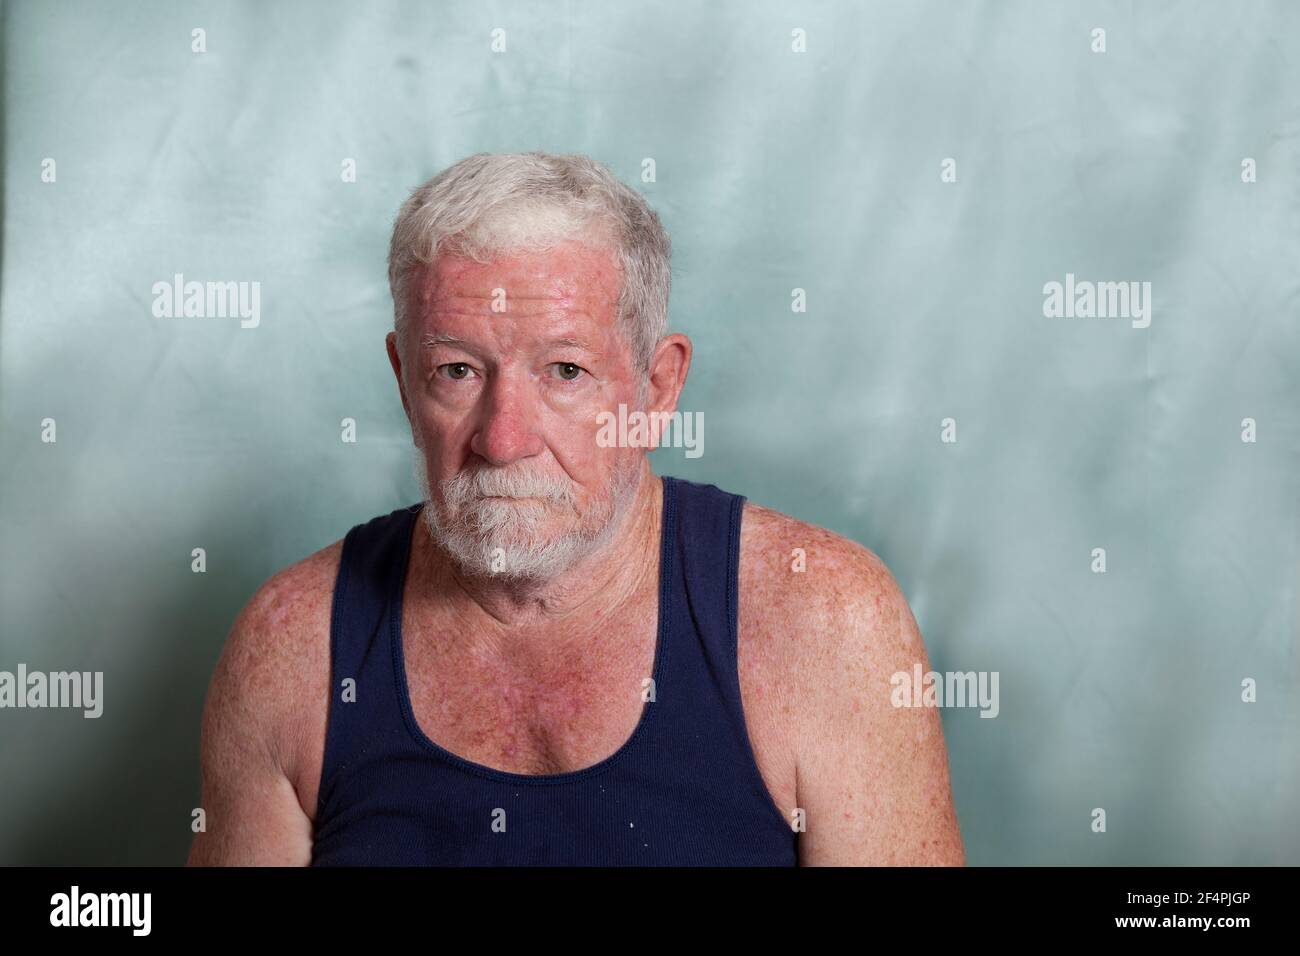 Un vieil homme caucasien habillé d'un singulet bleu, avec beaucoup de dommages solaires et de cancers de la peau et une expression gronde de colère sur son visage. Banque D'Images